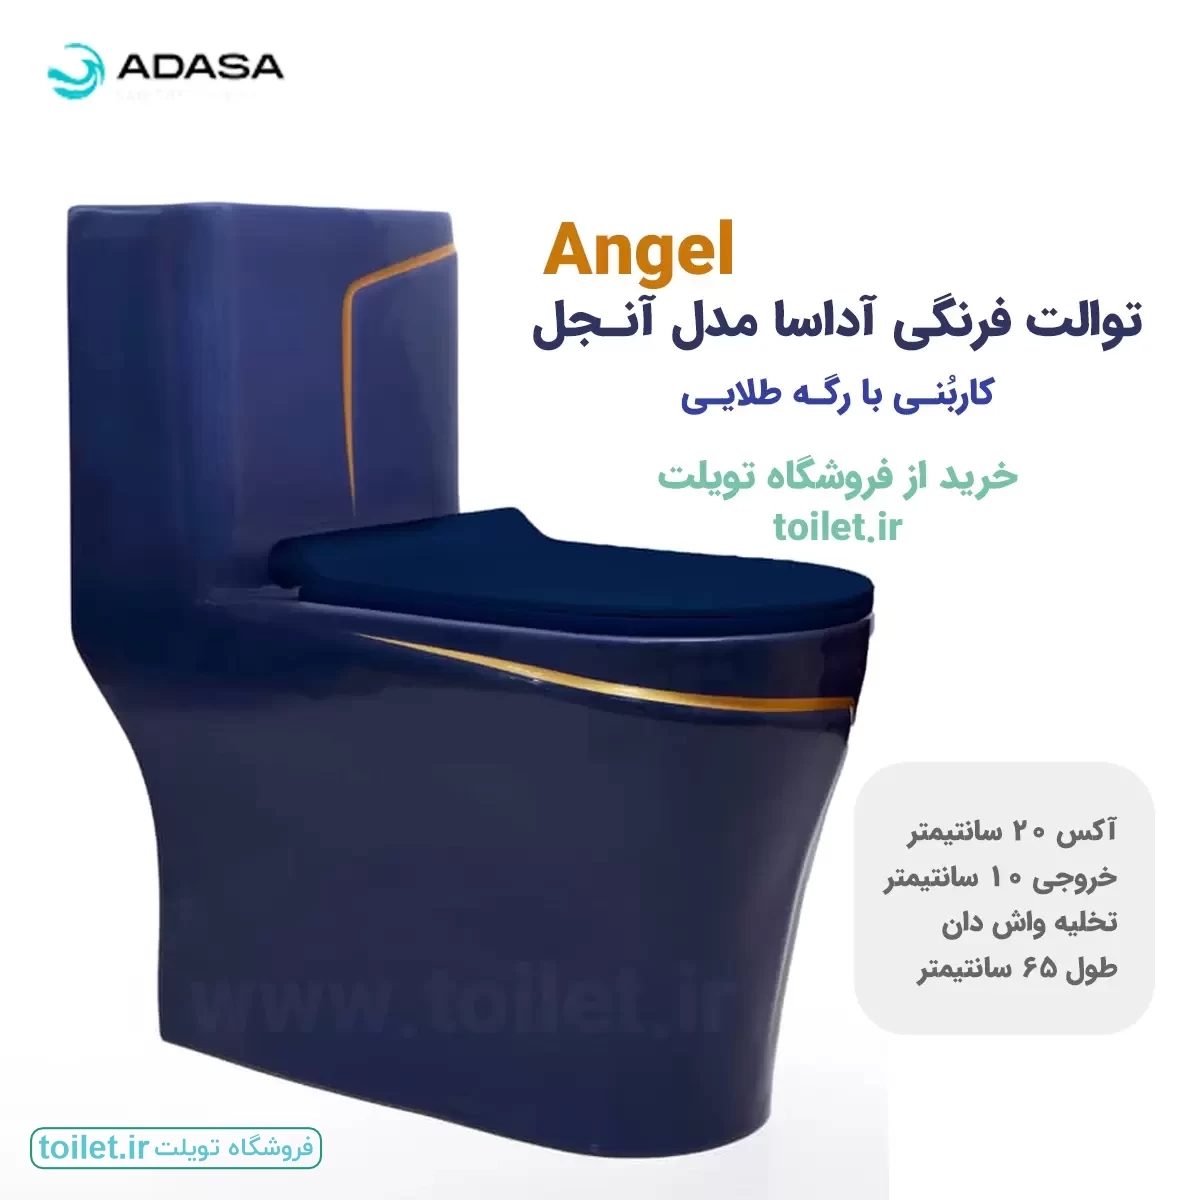 توالت فرنگی آداسا  مدل آنجل کاربنی با رگه طلایی     